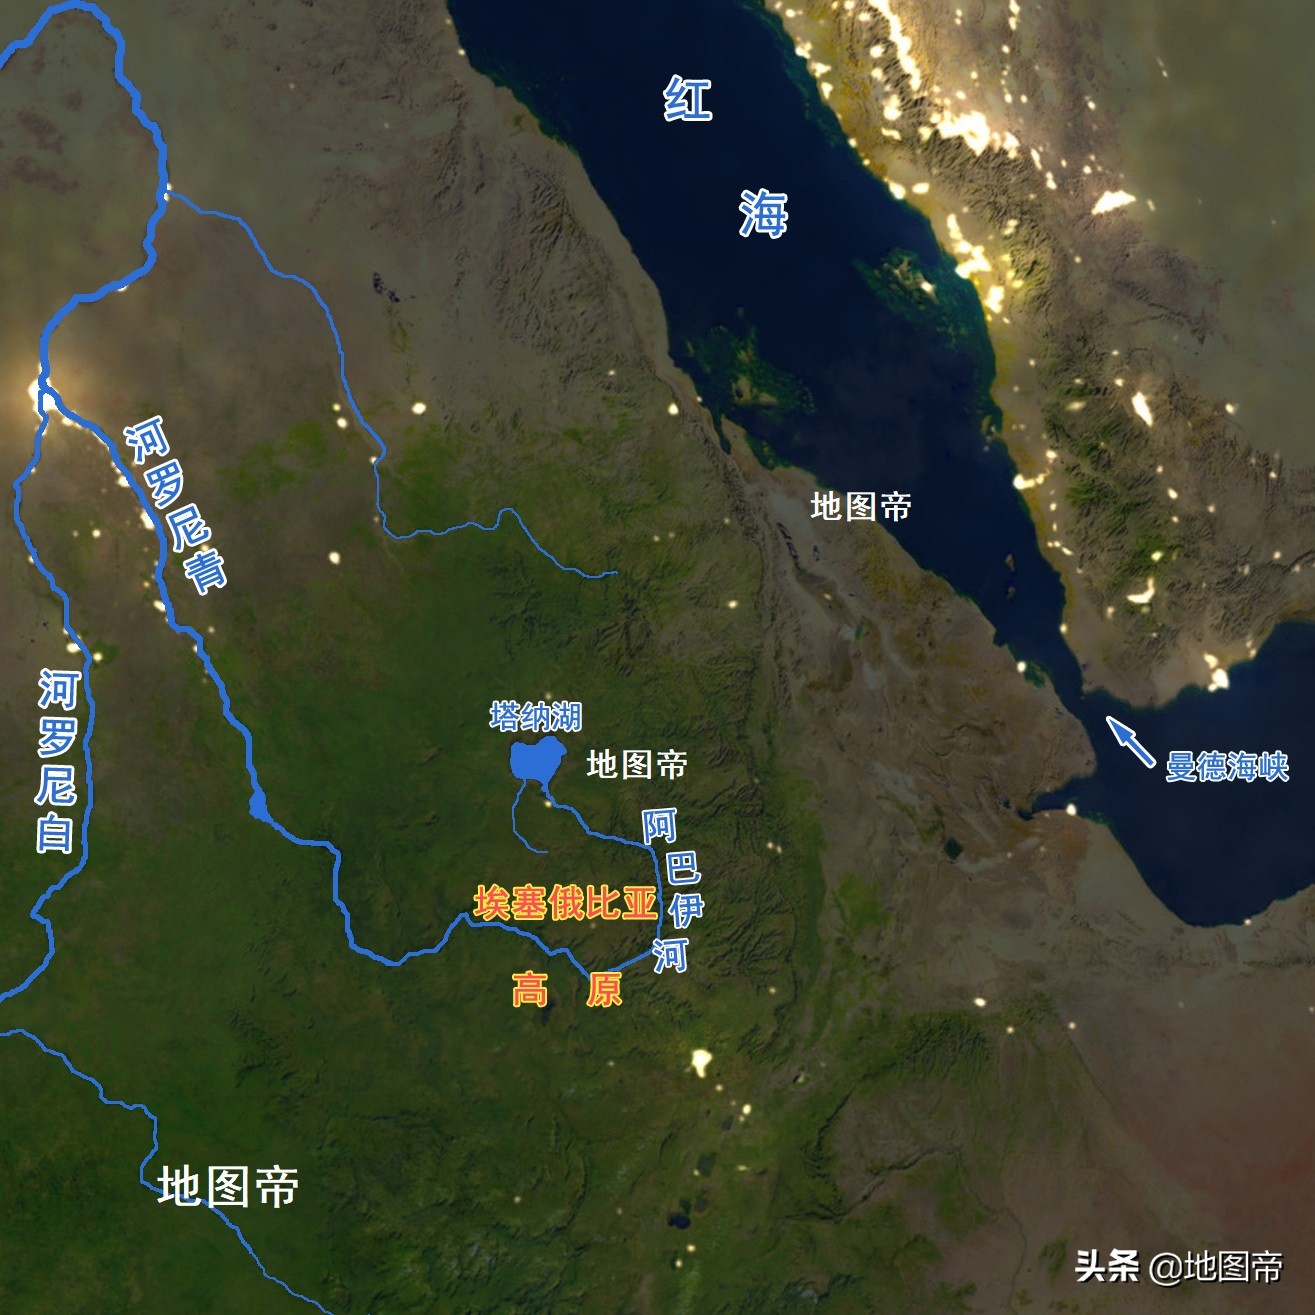 非洲的尼罗河为何有两个源头？